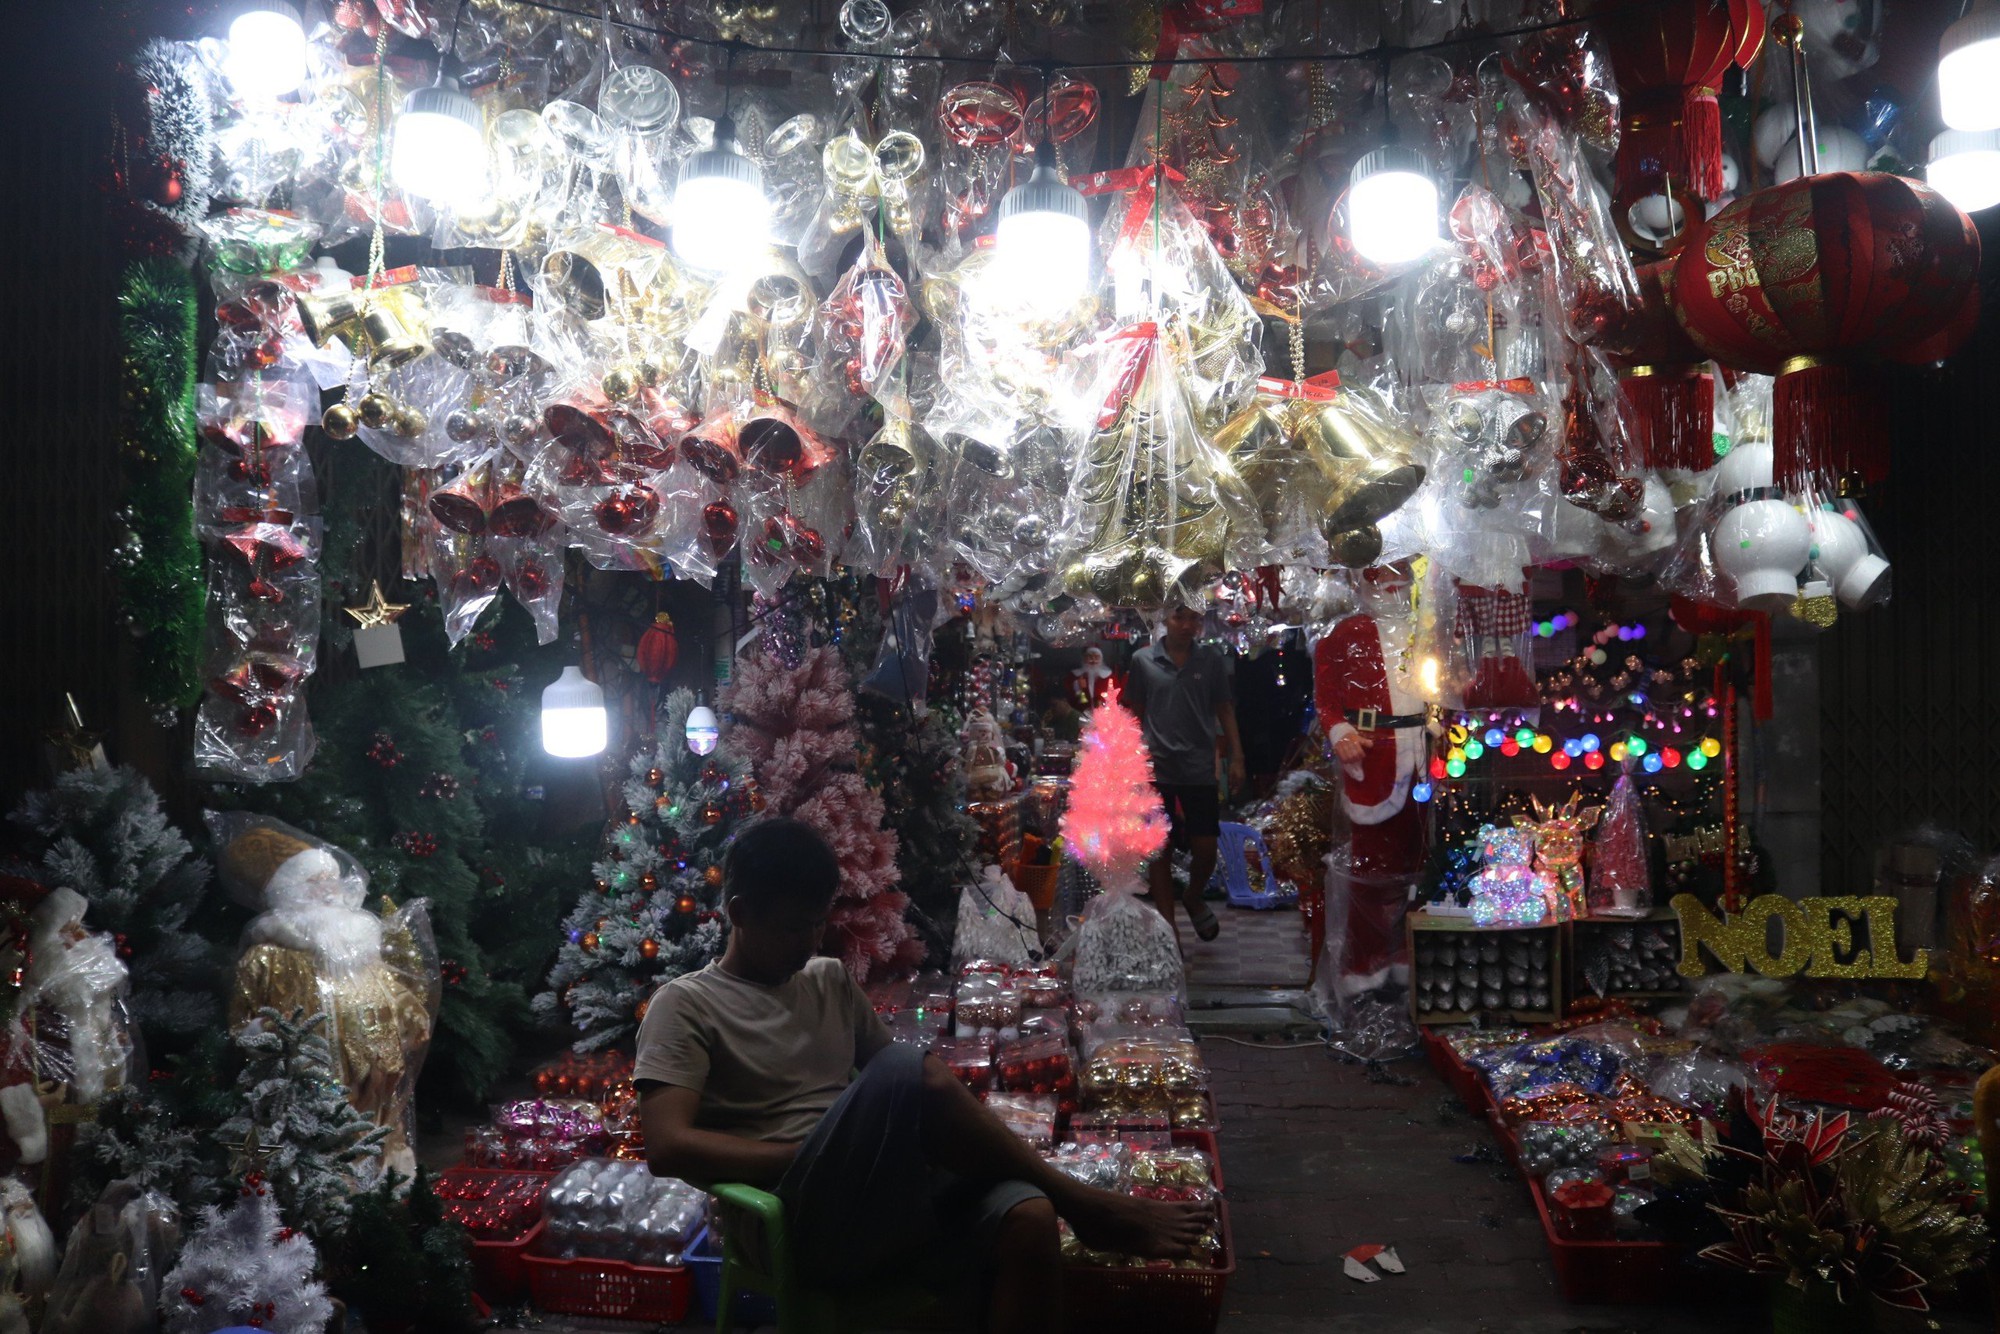 Người dân mua sắm Giáng sinh sớm, chợ đồ trang trí lớn nhất Sài Gòn sáng đèn từ đầu tháng 11 - Ảnh 6.